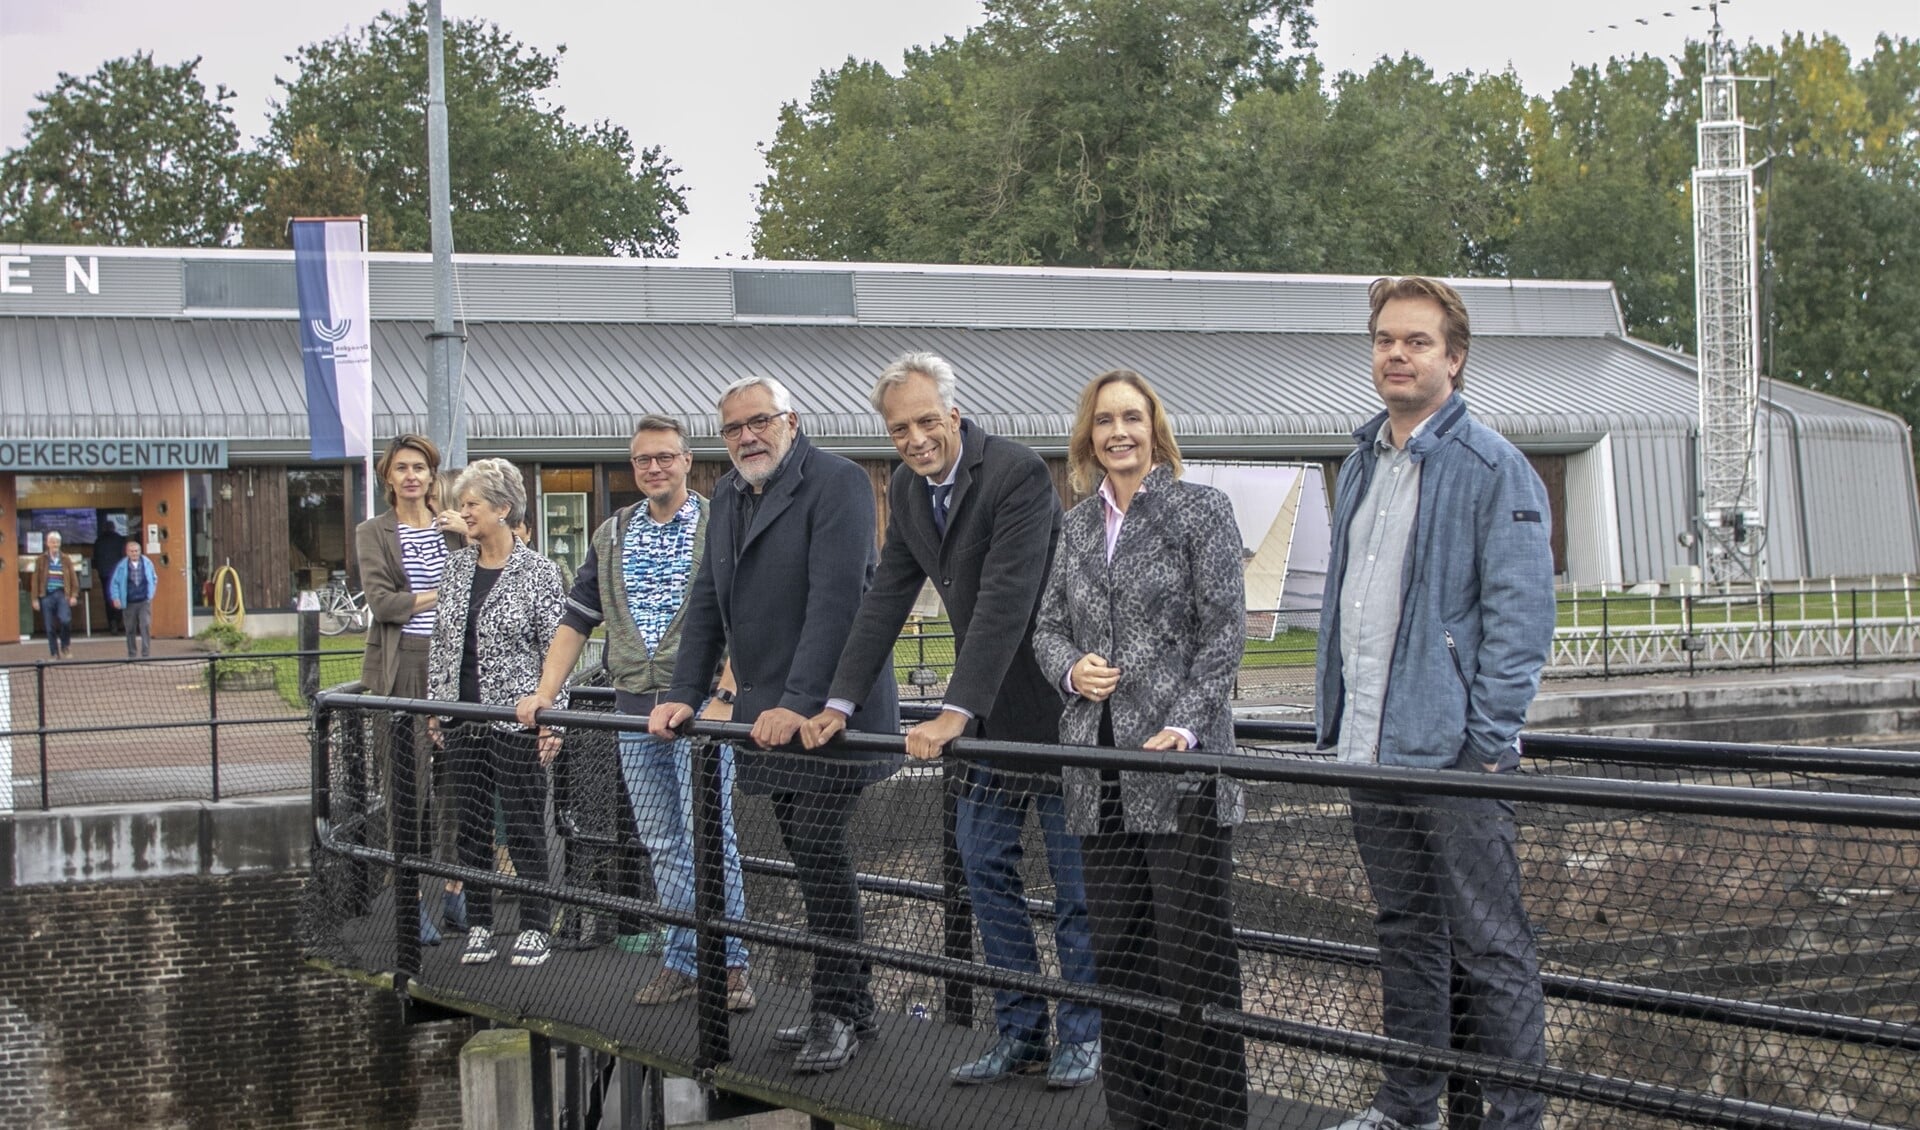  De delegaties van de gemeente Vijfheerenlanden en Hellevoetsluis bezochten samen de buitententoonstelling Stroomversnelling bij het Droogdok Jan Blanken. 